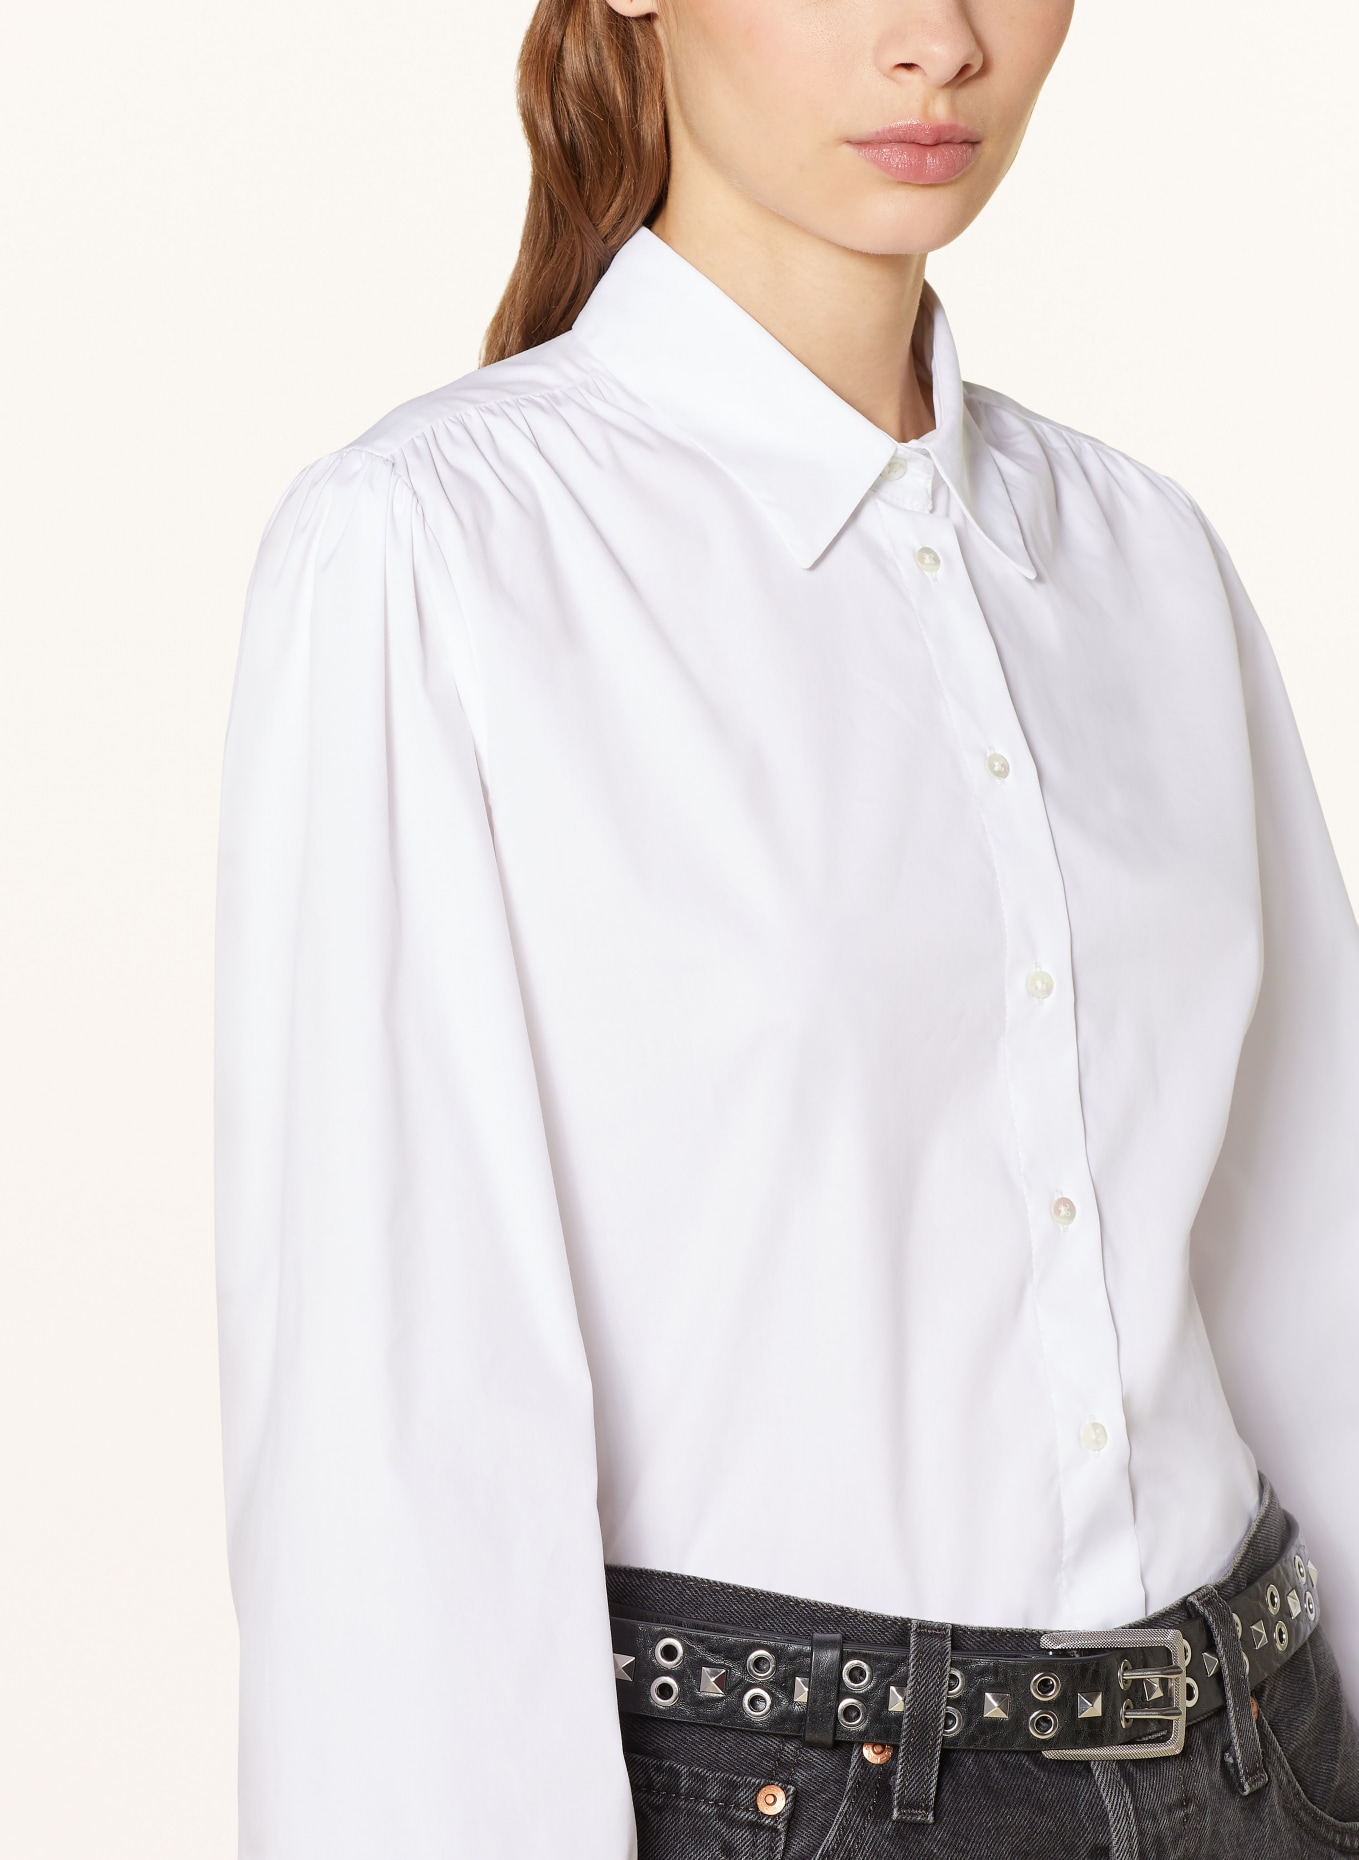 TONNO & PANNA Shirt blouse, Color: WHITE (Image 4)